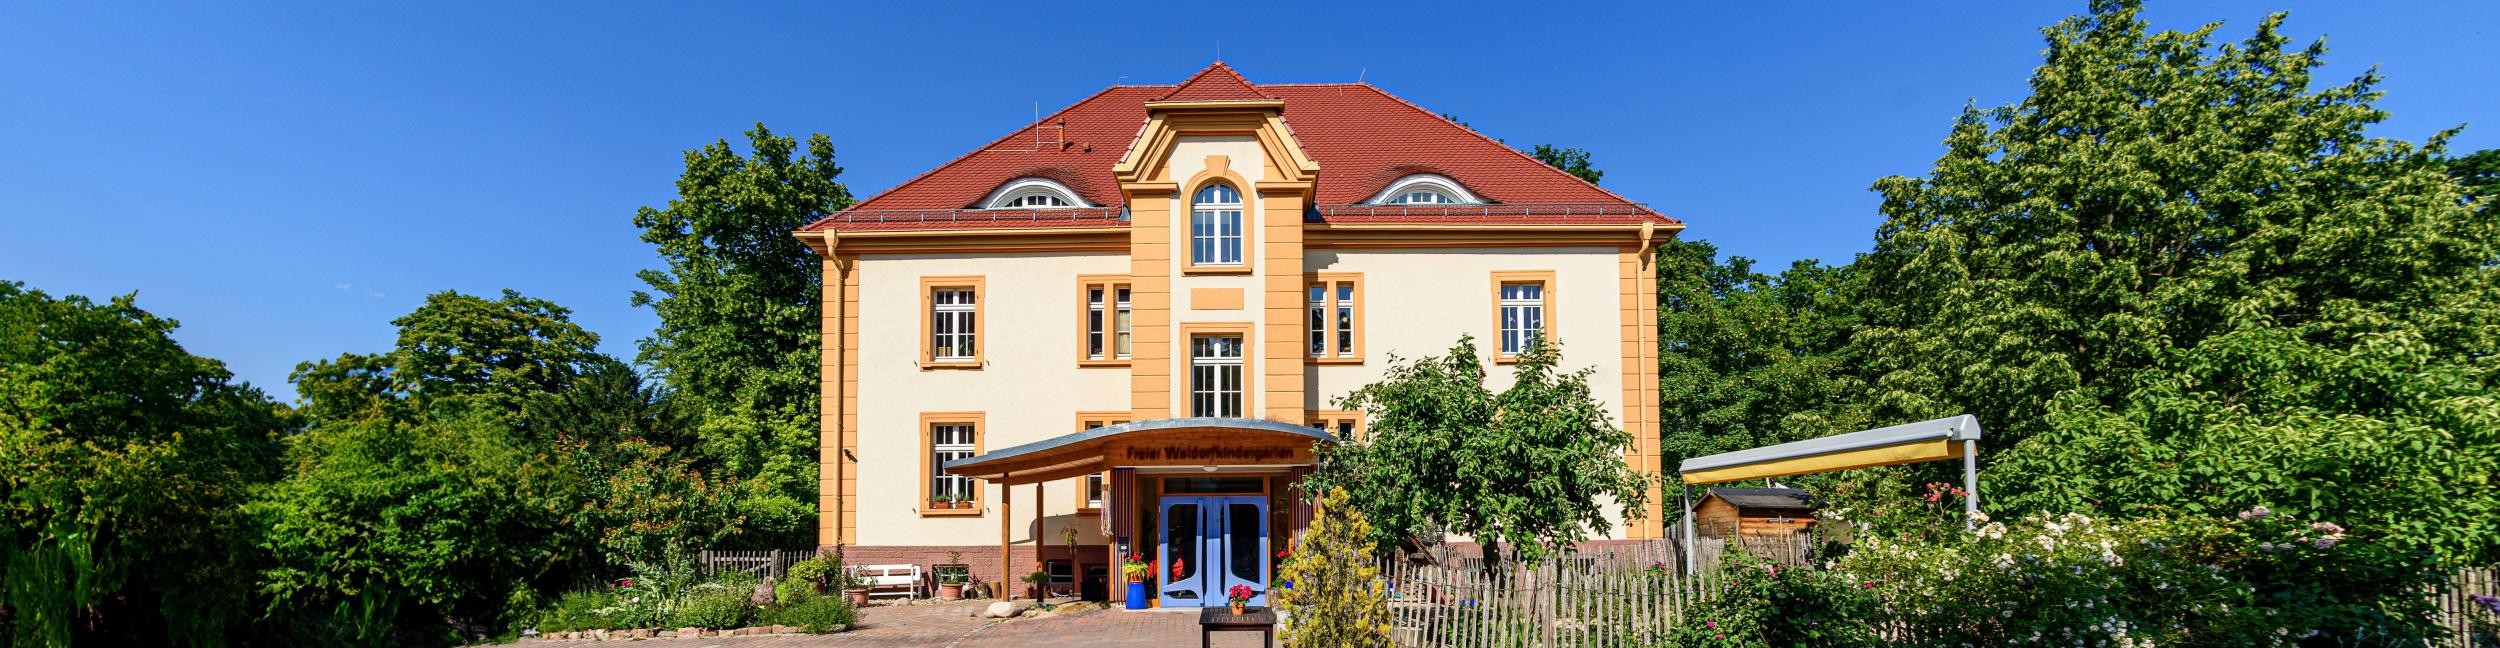 Le jardin d'enfants Waldorf de Rastatt de face